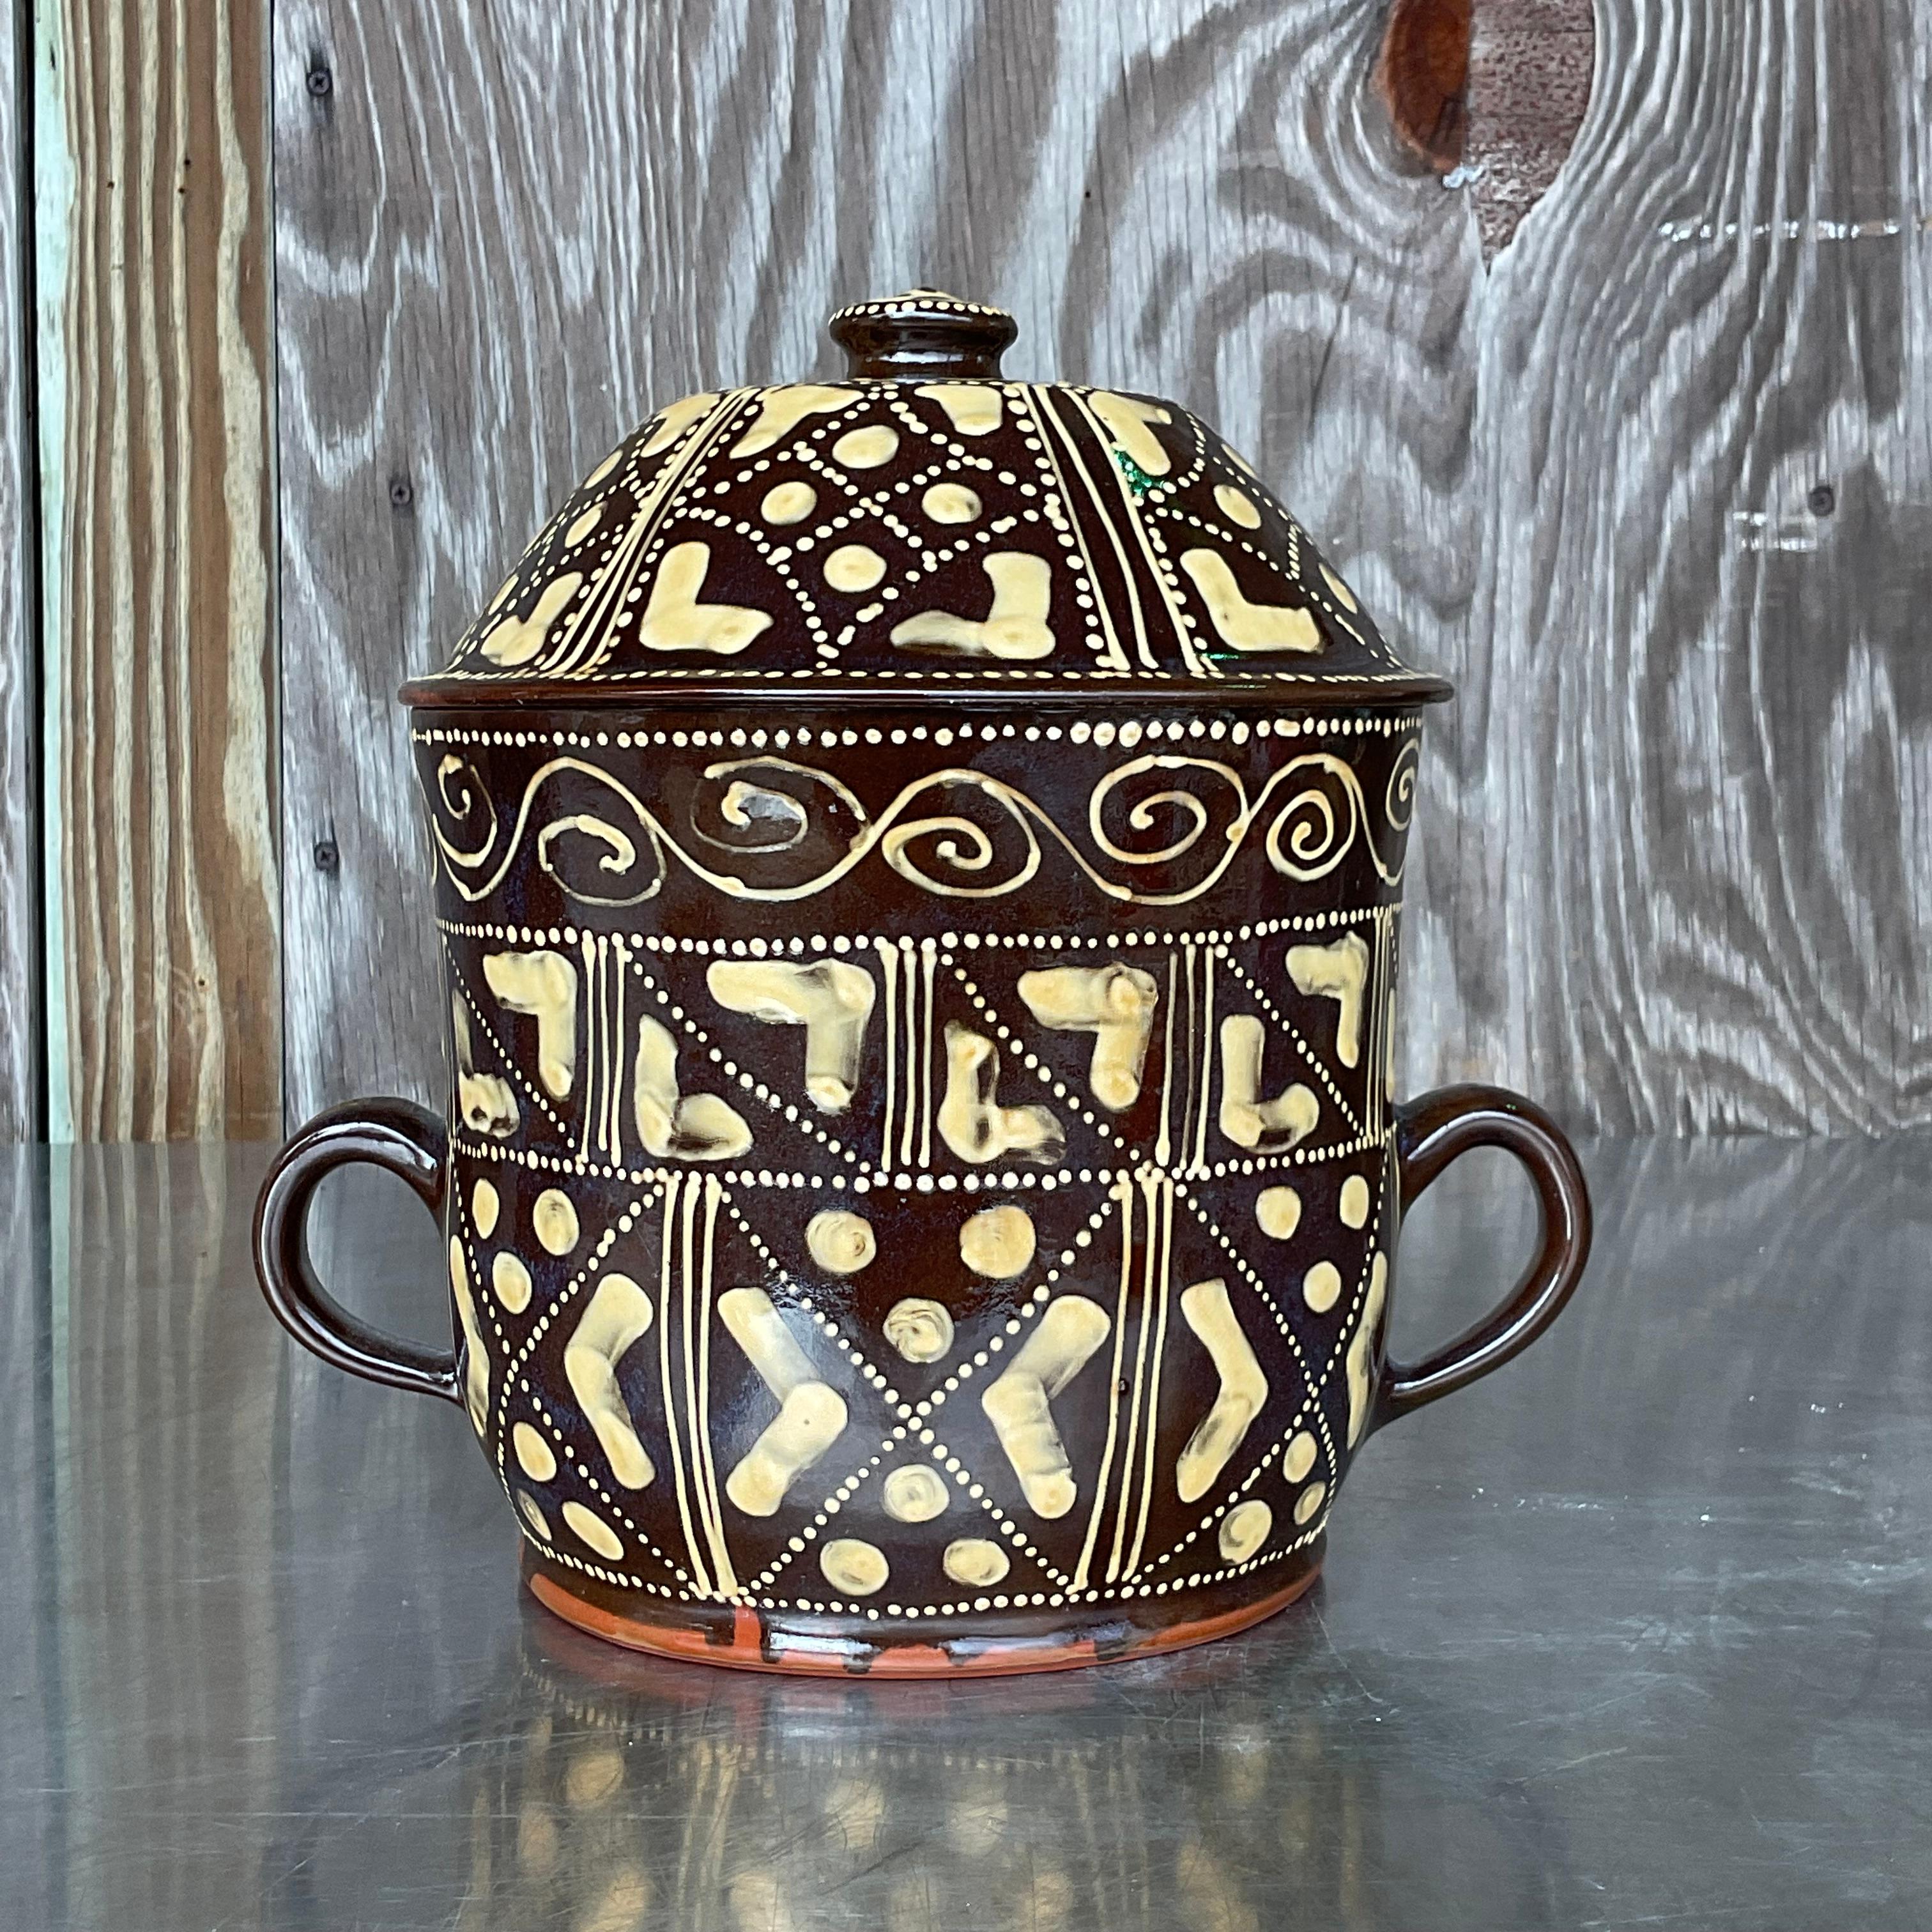 Ajoutez une touche de fantaisie à votre heure du thé avec notre Pot à Chocolat Vintage Boho en céramique peint à la main. Fabriquée avec un flair artistique et imprégnée du charme de la bohème, cette pièce exquise apporte une touche de couleur et de